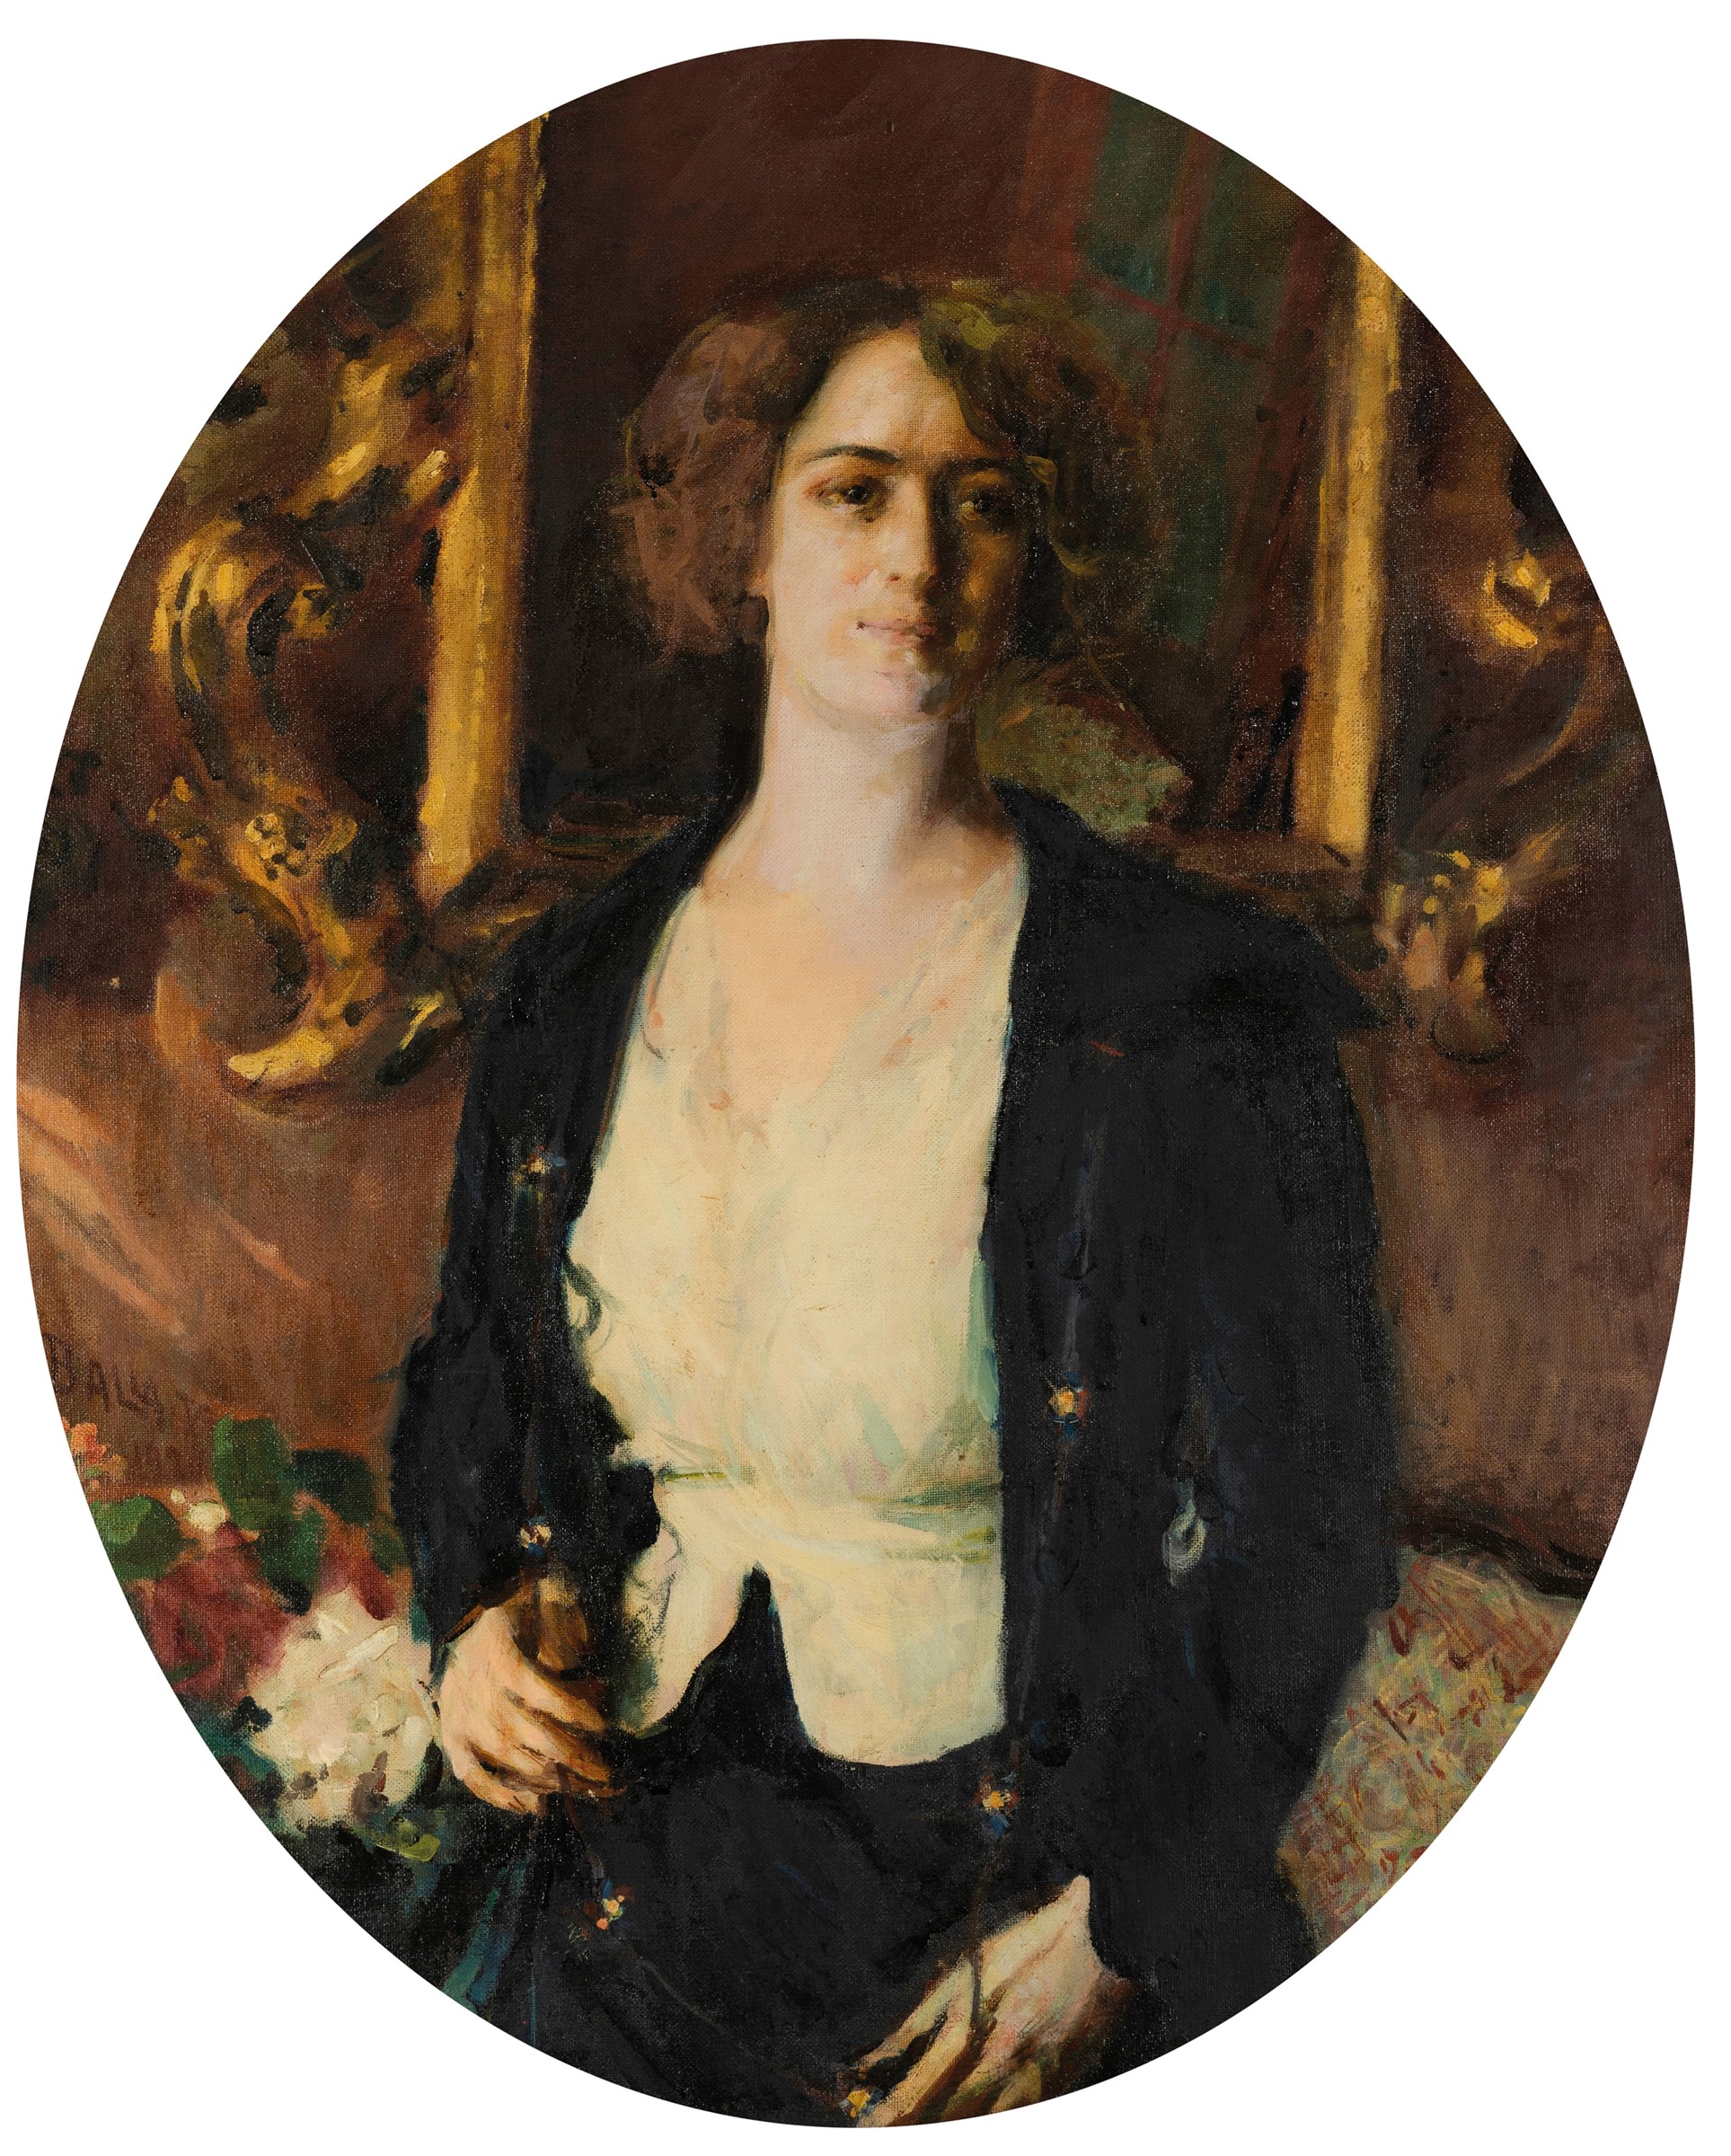 LOTTO  233 - Giacomo Balla, Ritratto della signorina Burba, 1920. Olio su tela, cm 100x80. Stima: EUR 45.000,00 - 55.000,00